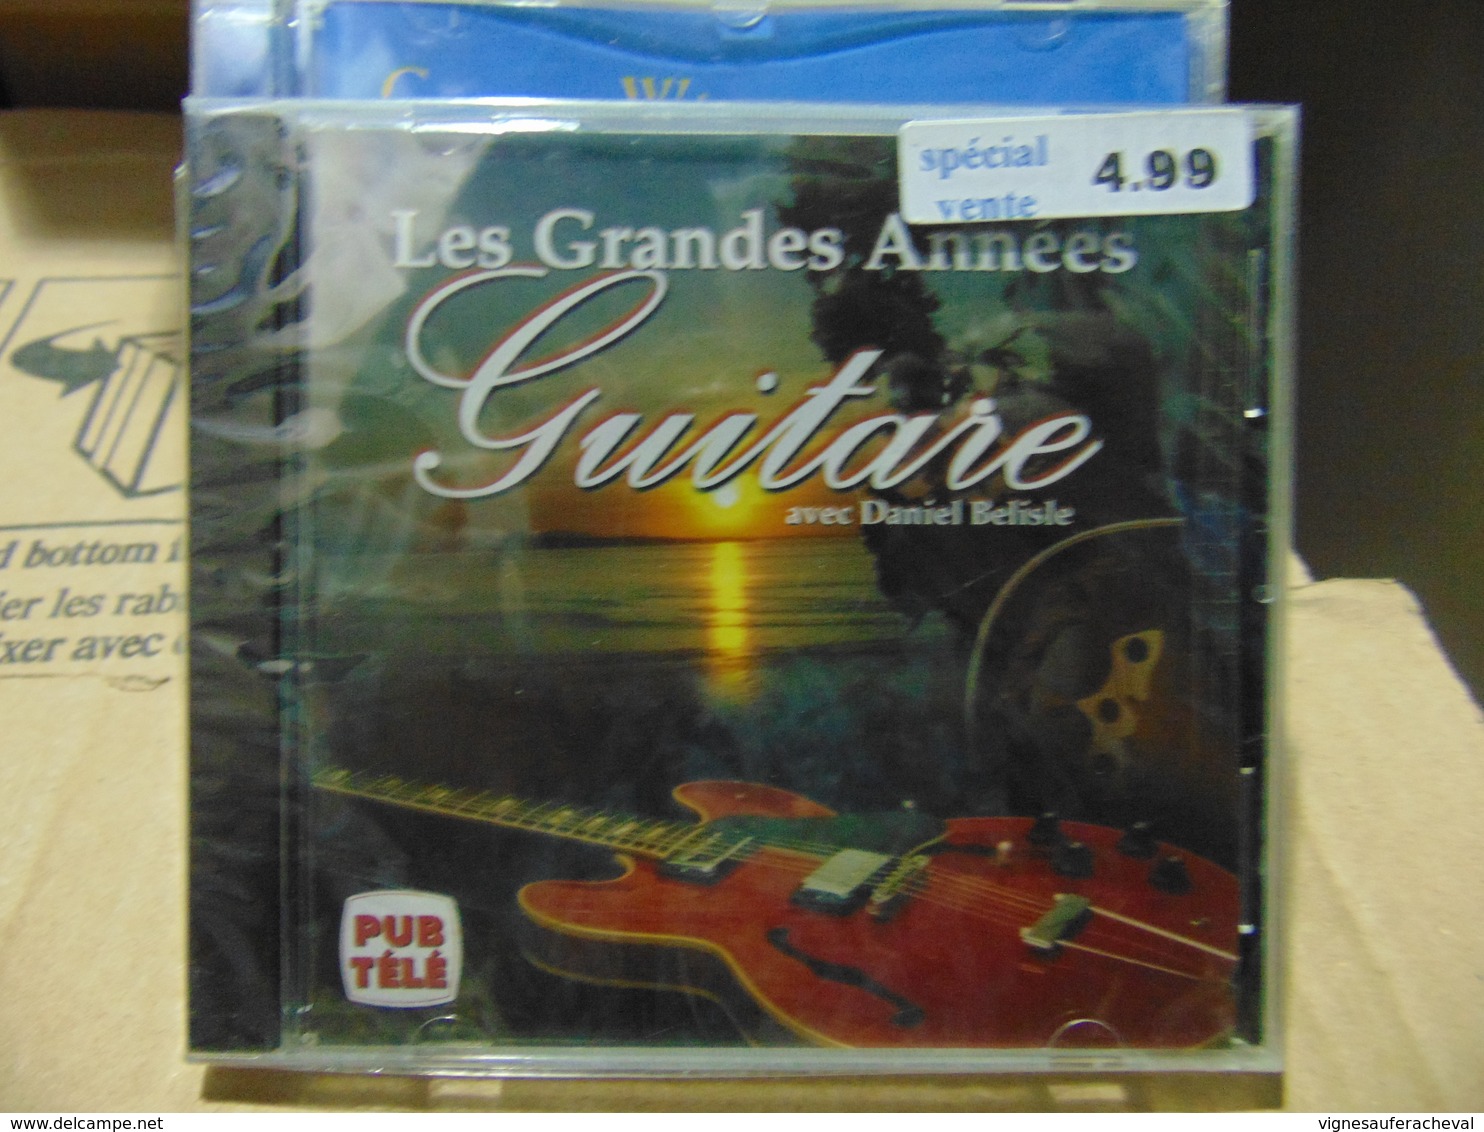 Daniel Belisle-Les Grandes Années Guitare - World Music